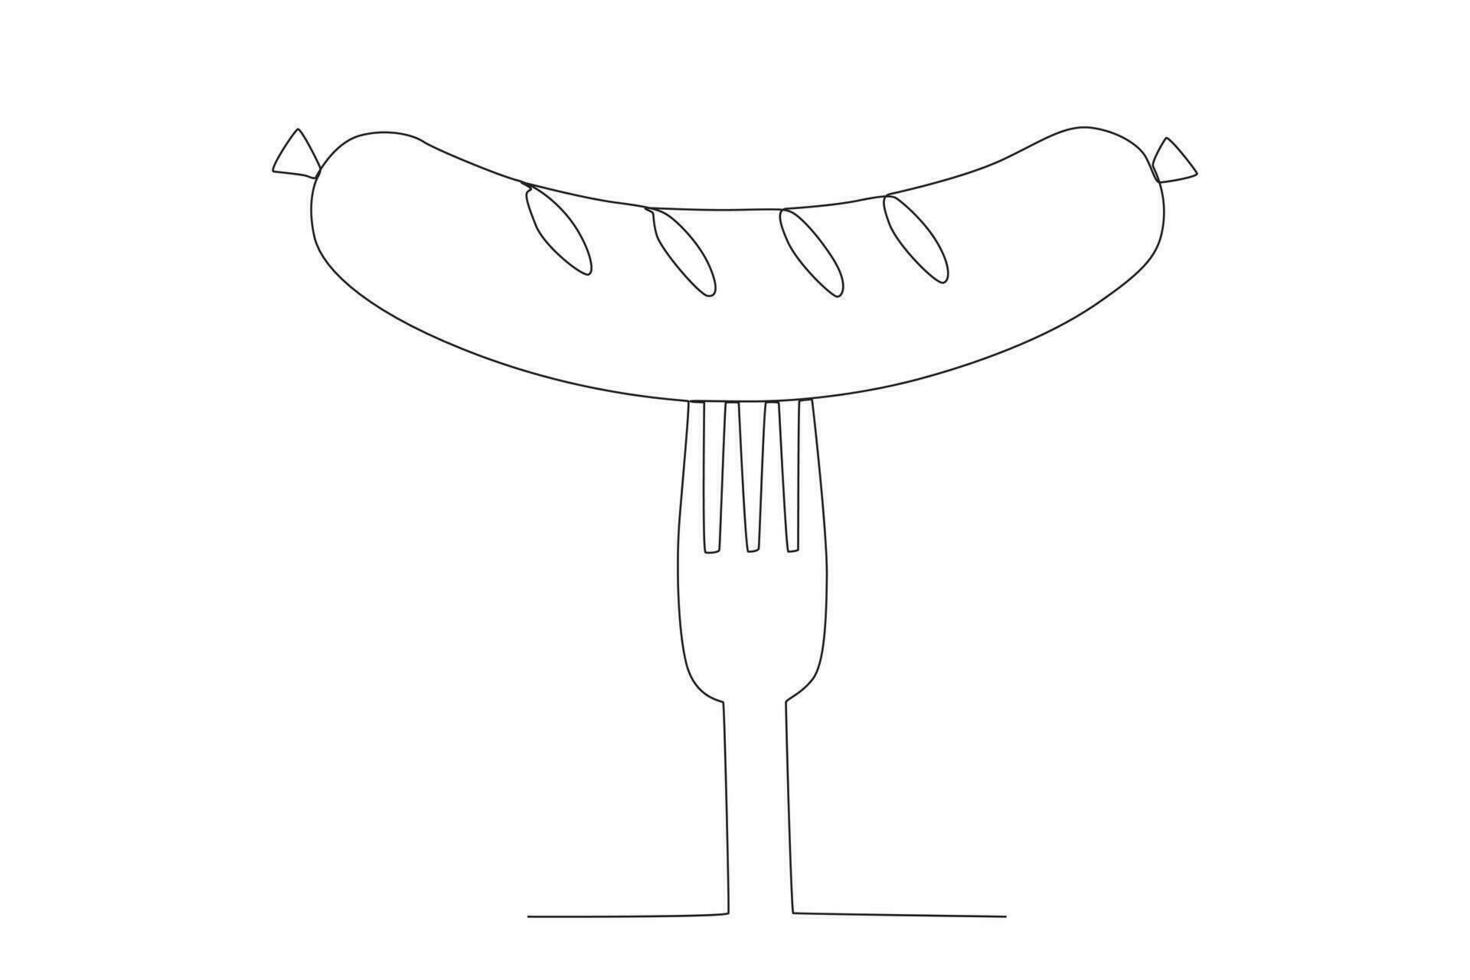 Vector illustration oneline of roasted sausage on fork engraving vector illustration design element for menu bar food courtfast food restaurant